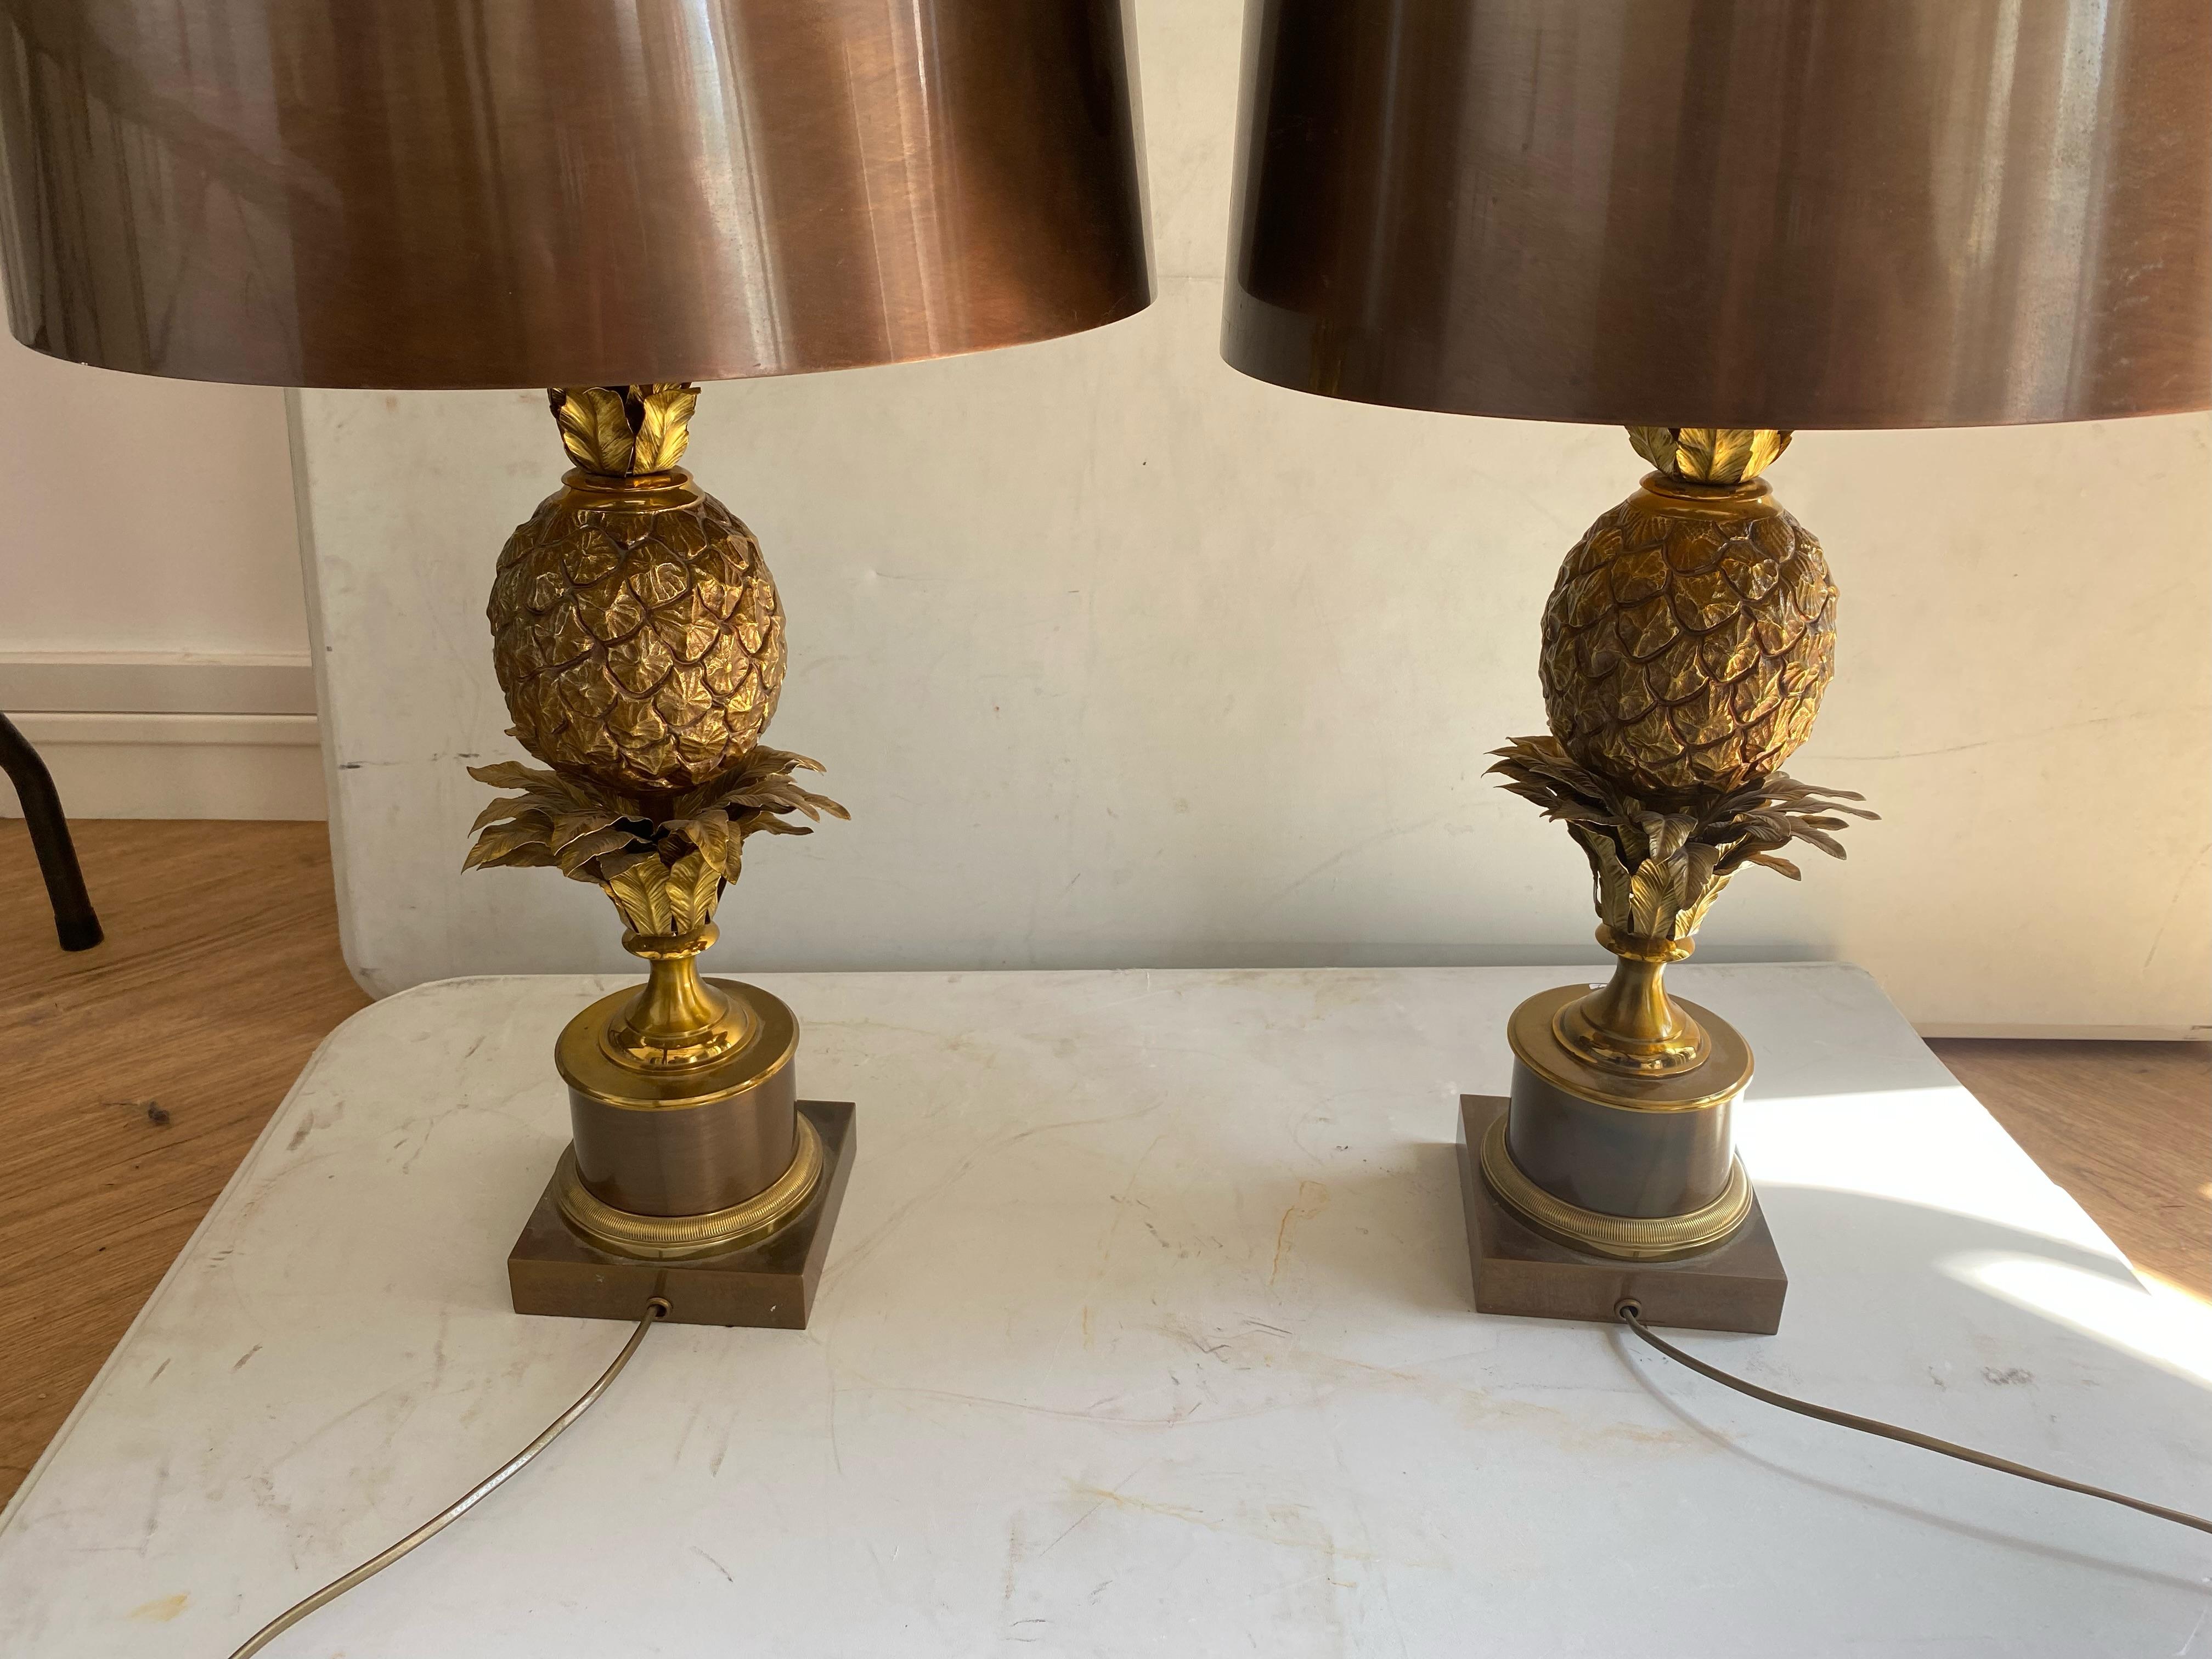 Paire de lampes ananas signées Charles & Fils, fabriquées en France, structure en bronze, abat-jour en laiton patiné avec une soucoupe anti-reflet, pièce unique de commande, bon état, Circa 1950/70
3 ampoules, douilles à vis
Hauteur : 74cm
Base :